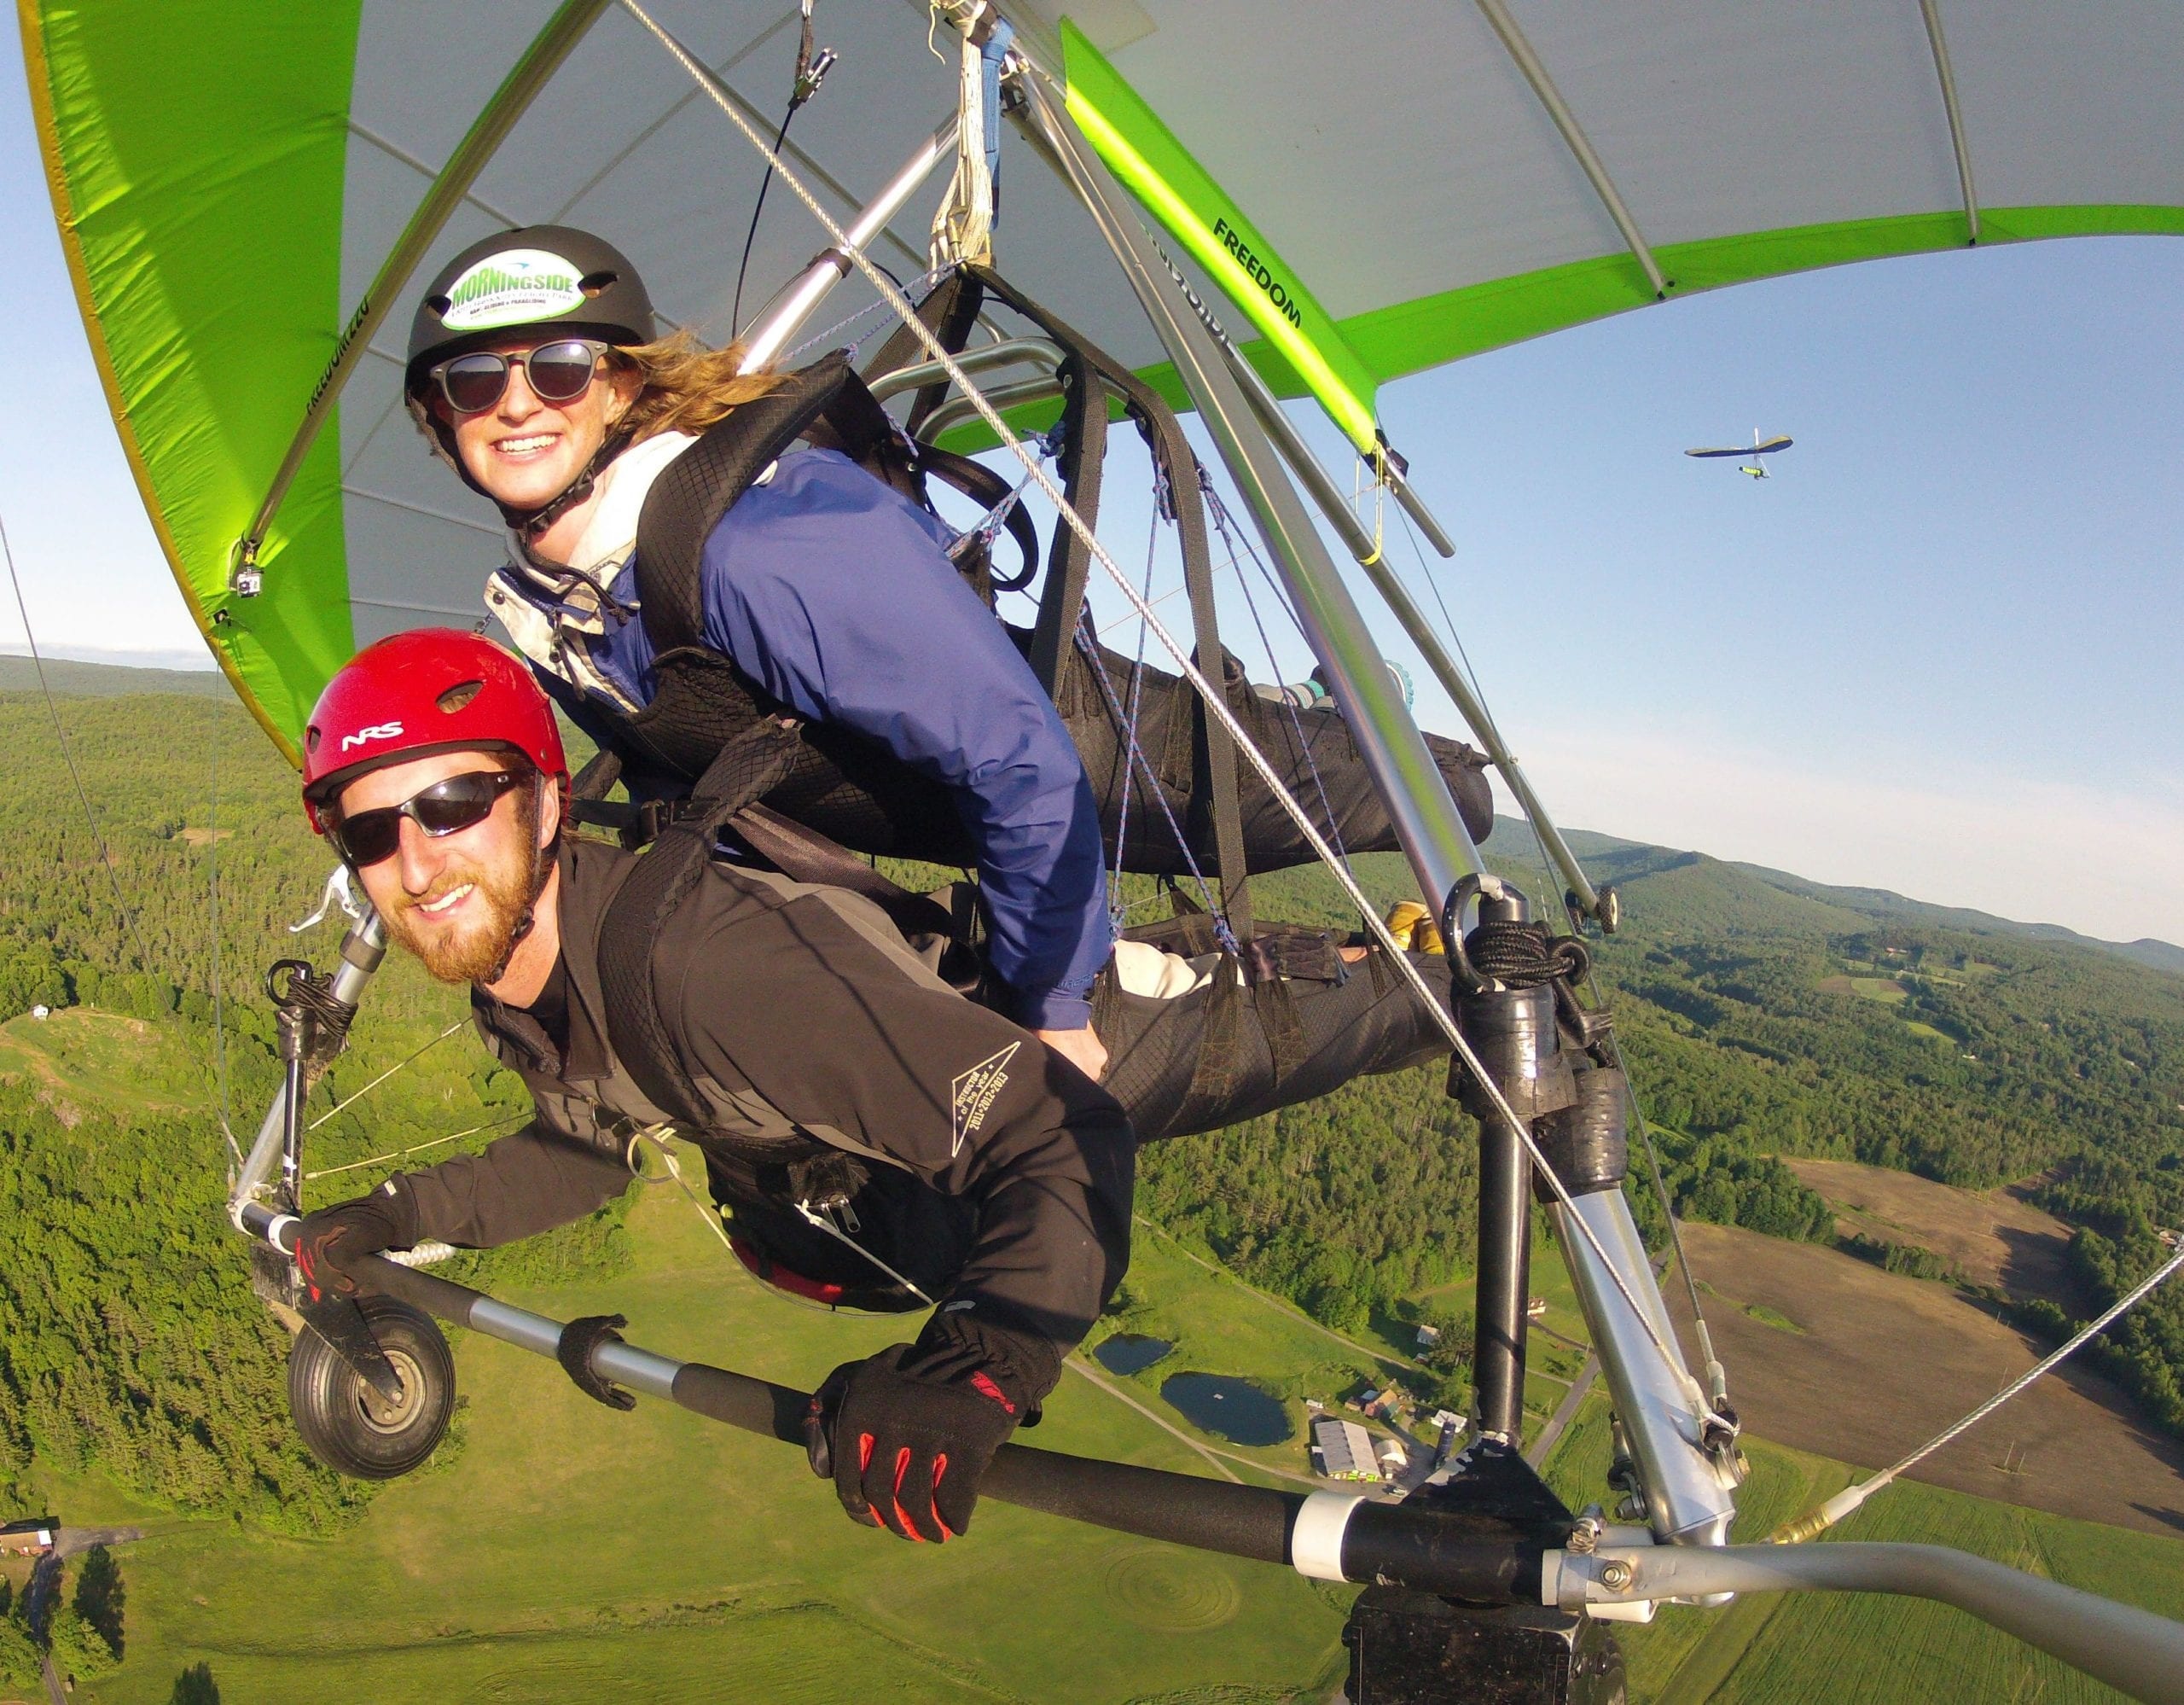 Hang Gliding: Tandem hang gliding, Morningside Flight Park, An expert instructor. 2560x2000 HD Wallpaper.